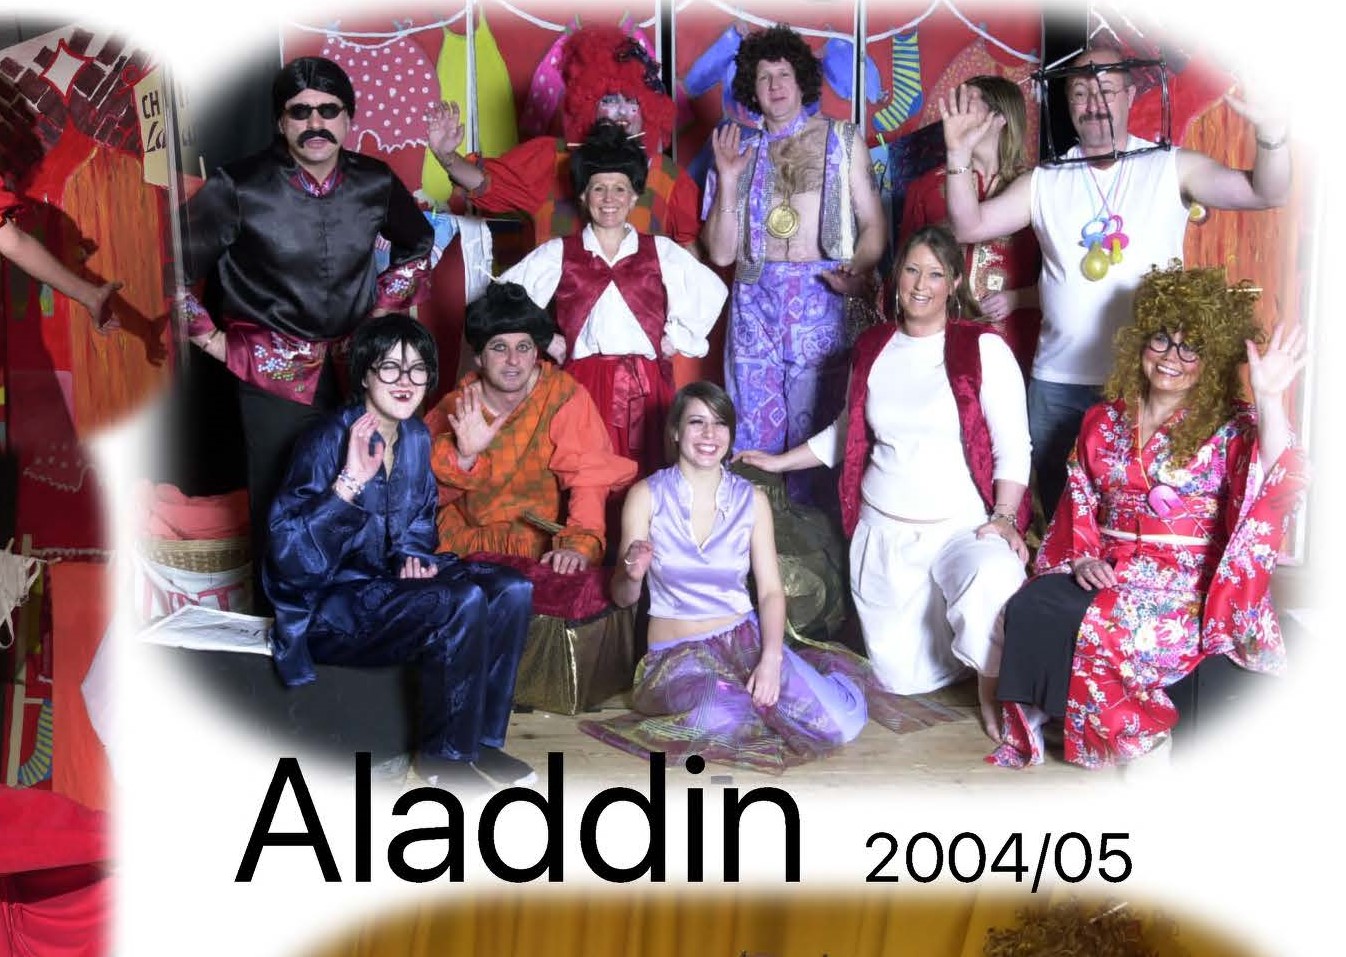 Aladdin - 2004/05